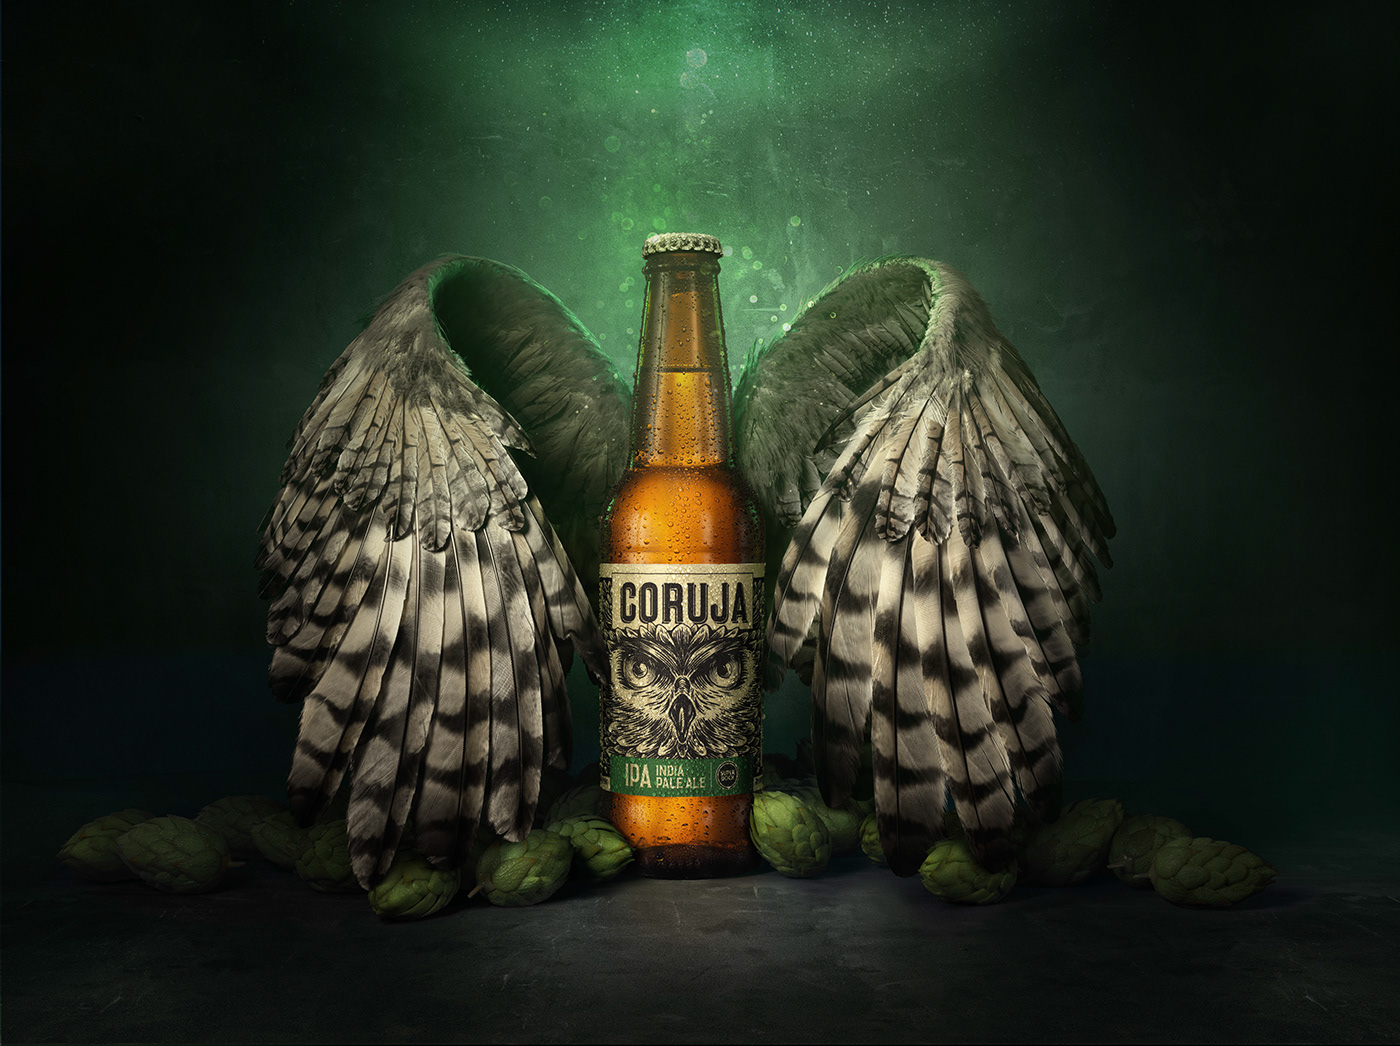 packshoot Platinum ilustration 3D Coruja beer owl CGI digitalart